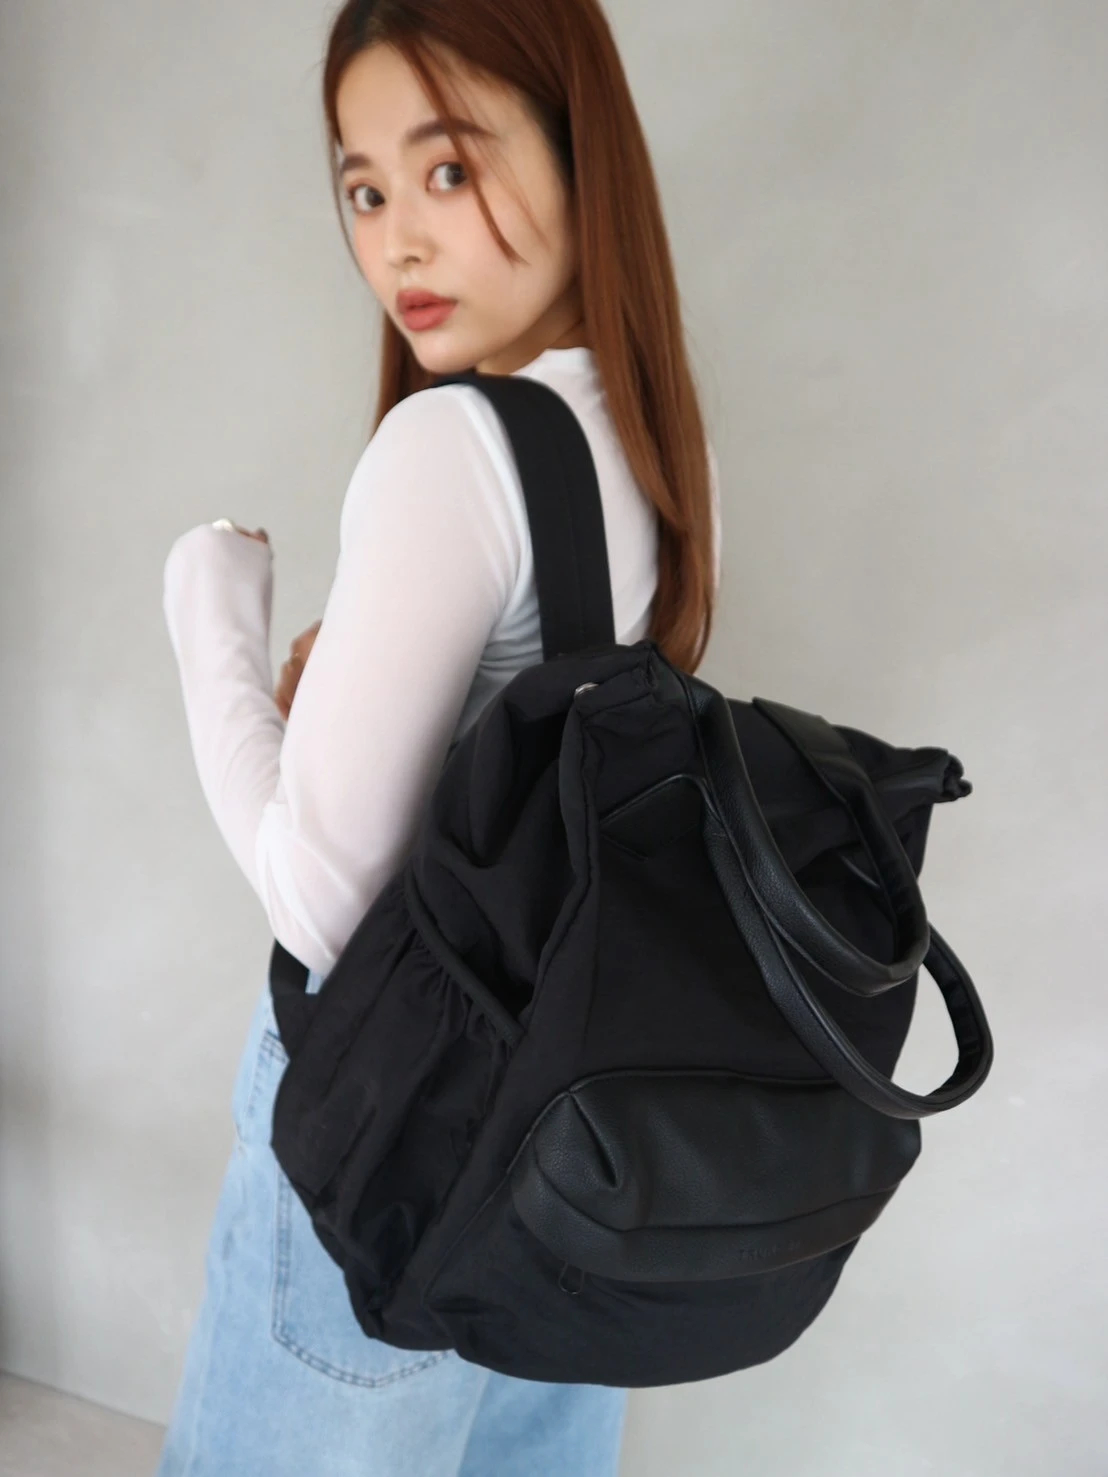 7,200円【trunc 88】2WAY Mulchfunctional Backpack